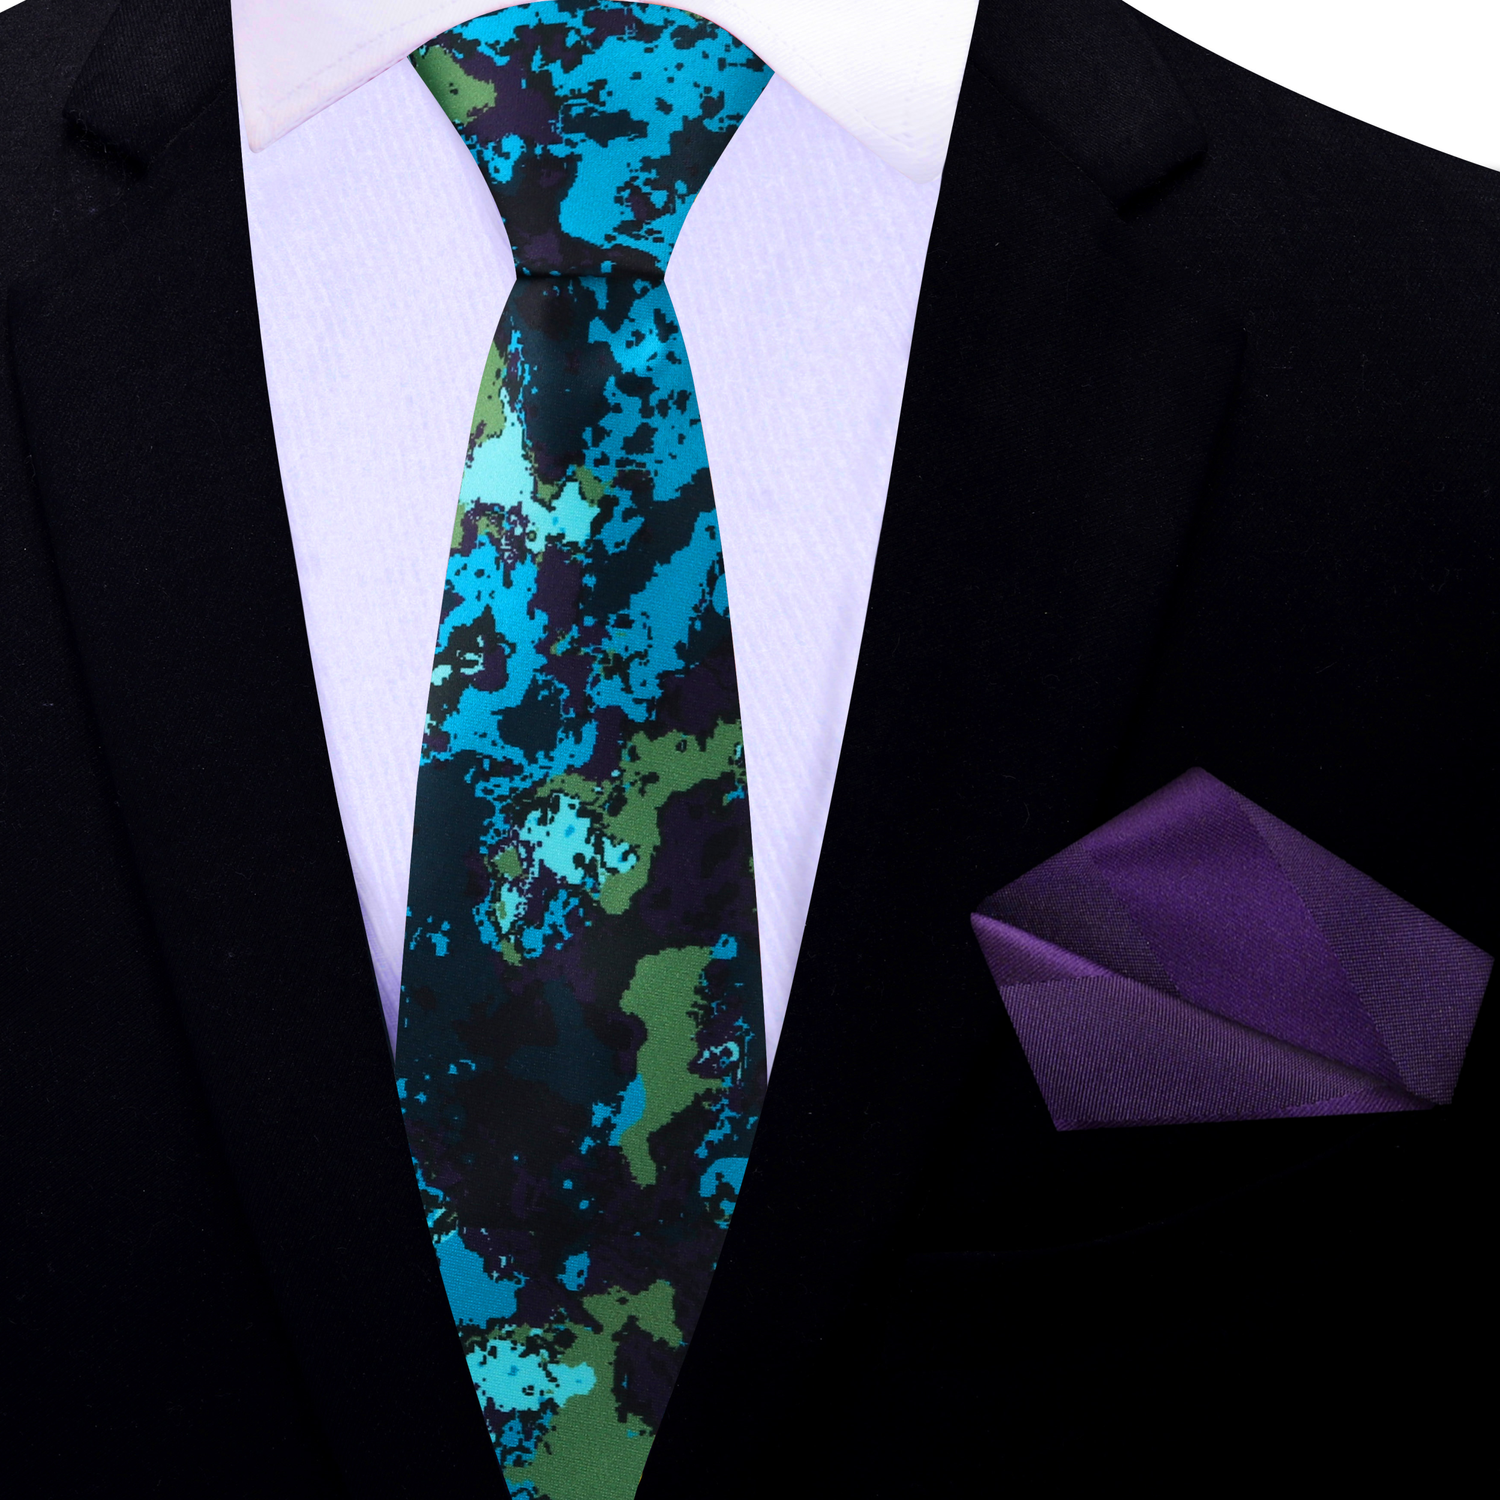 Thin Tie: Blue, Green, Purple Ink Blot Necktie and Purple Pocket Square